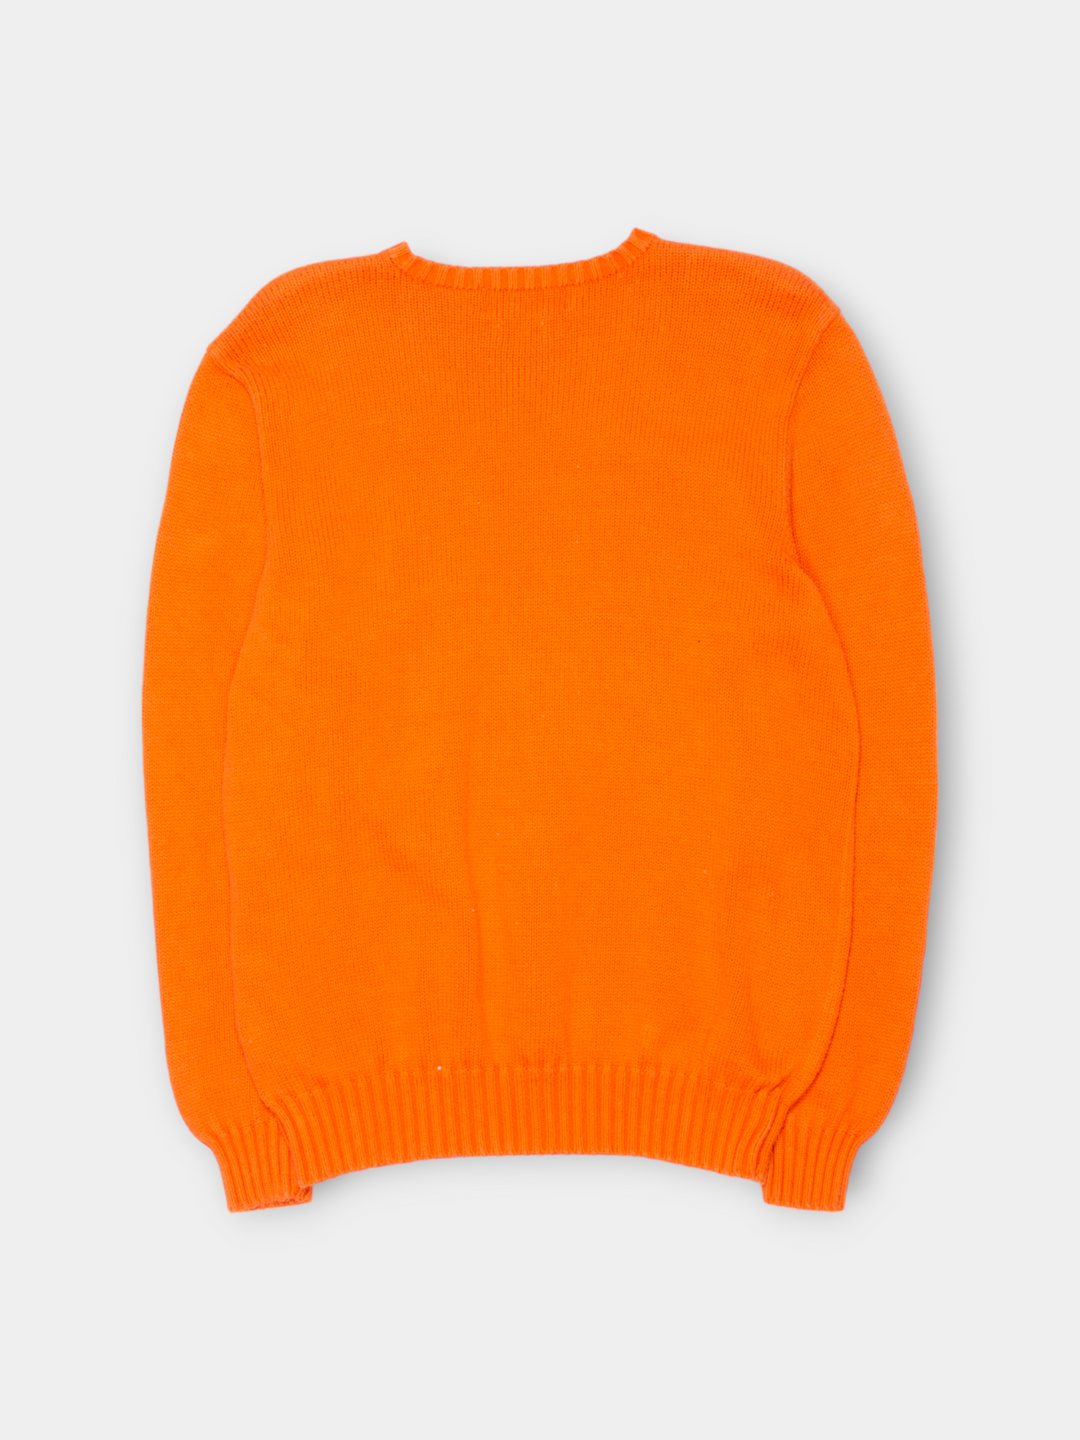 90s Ralph Lauren Knit Sweater (M)